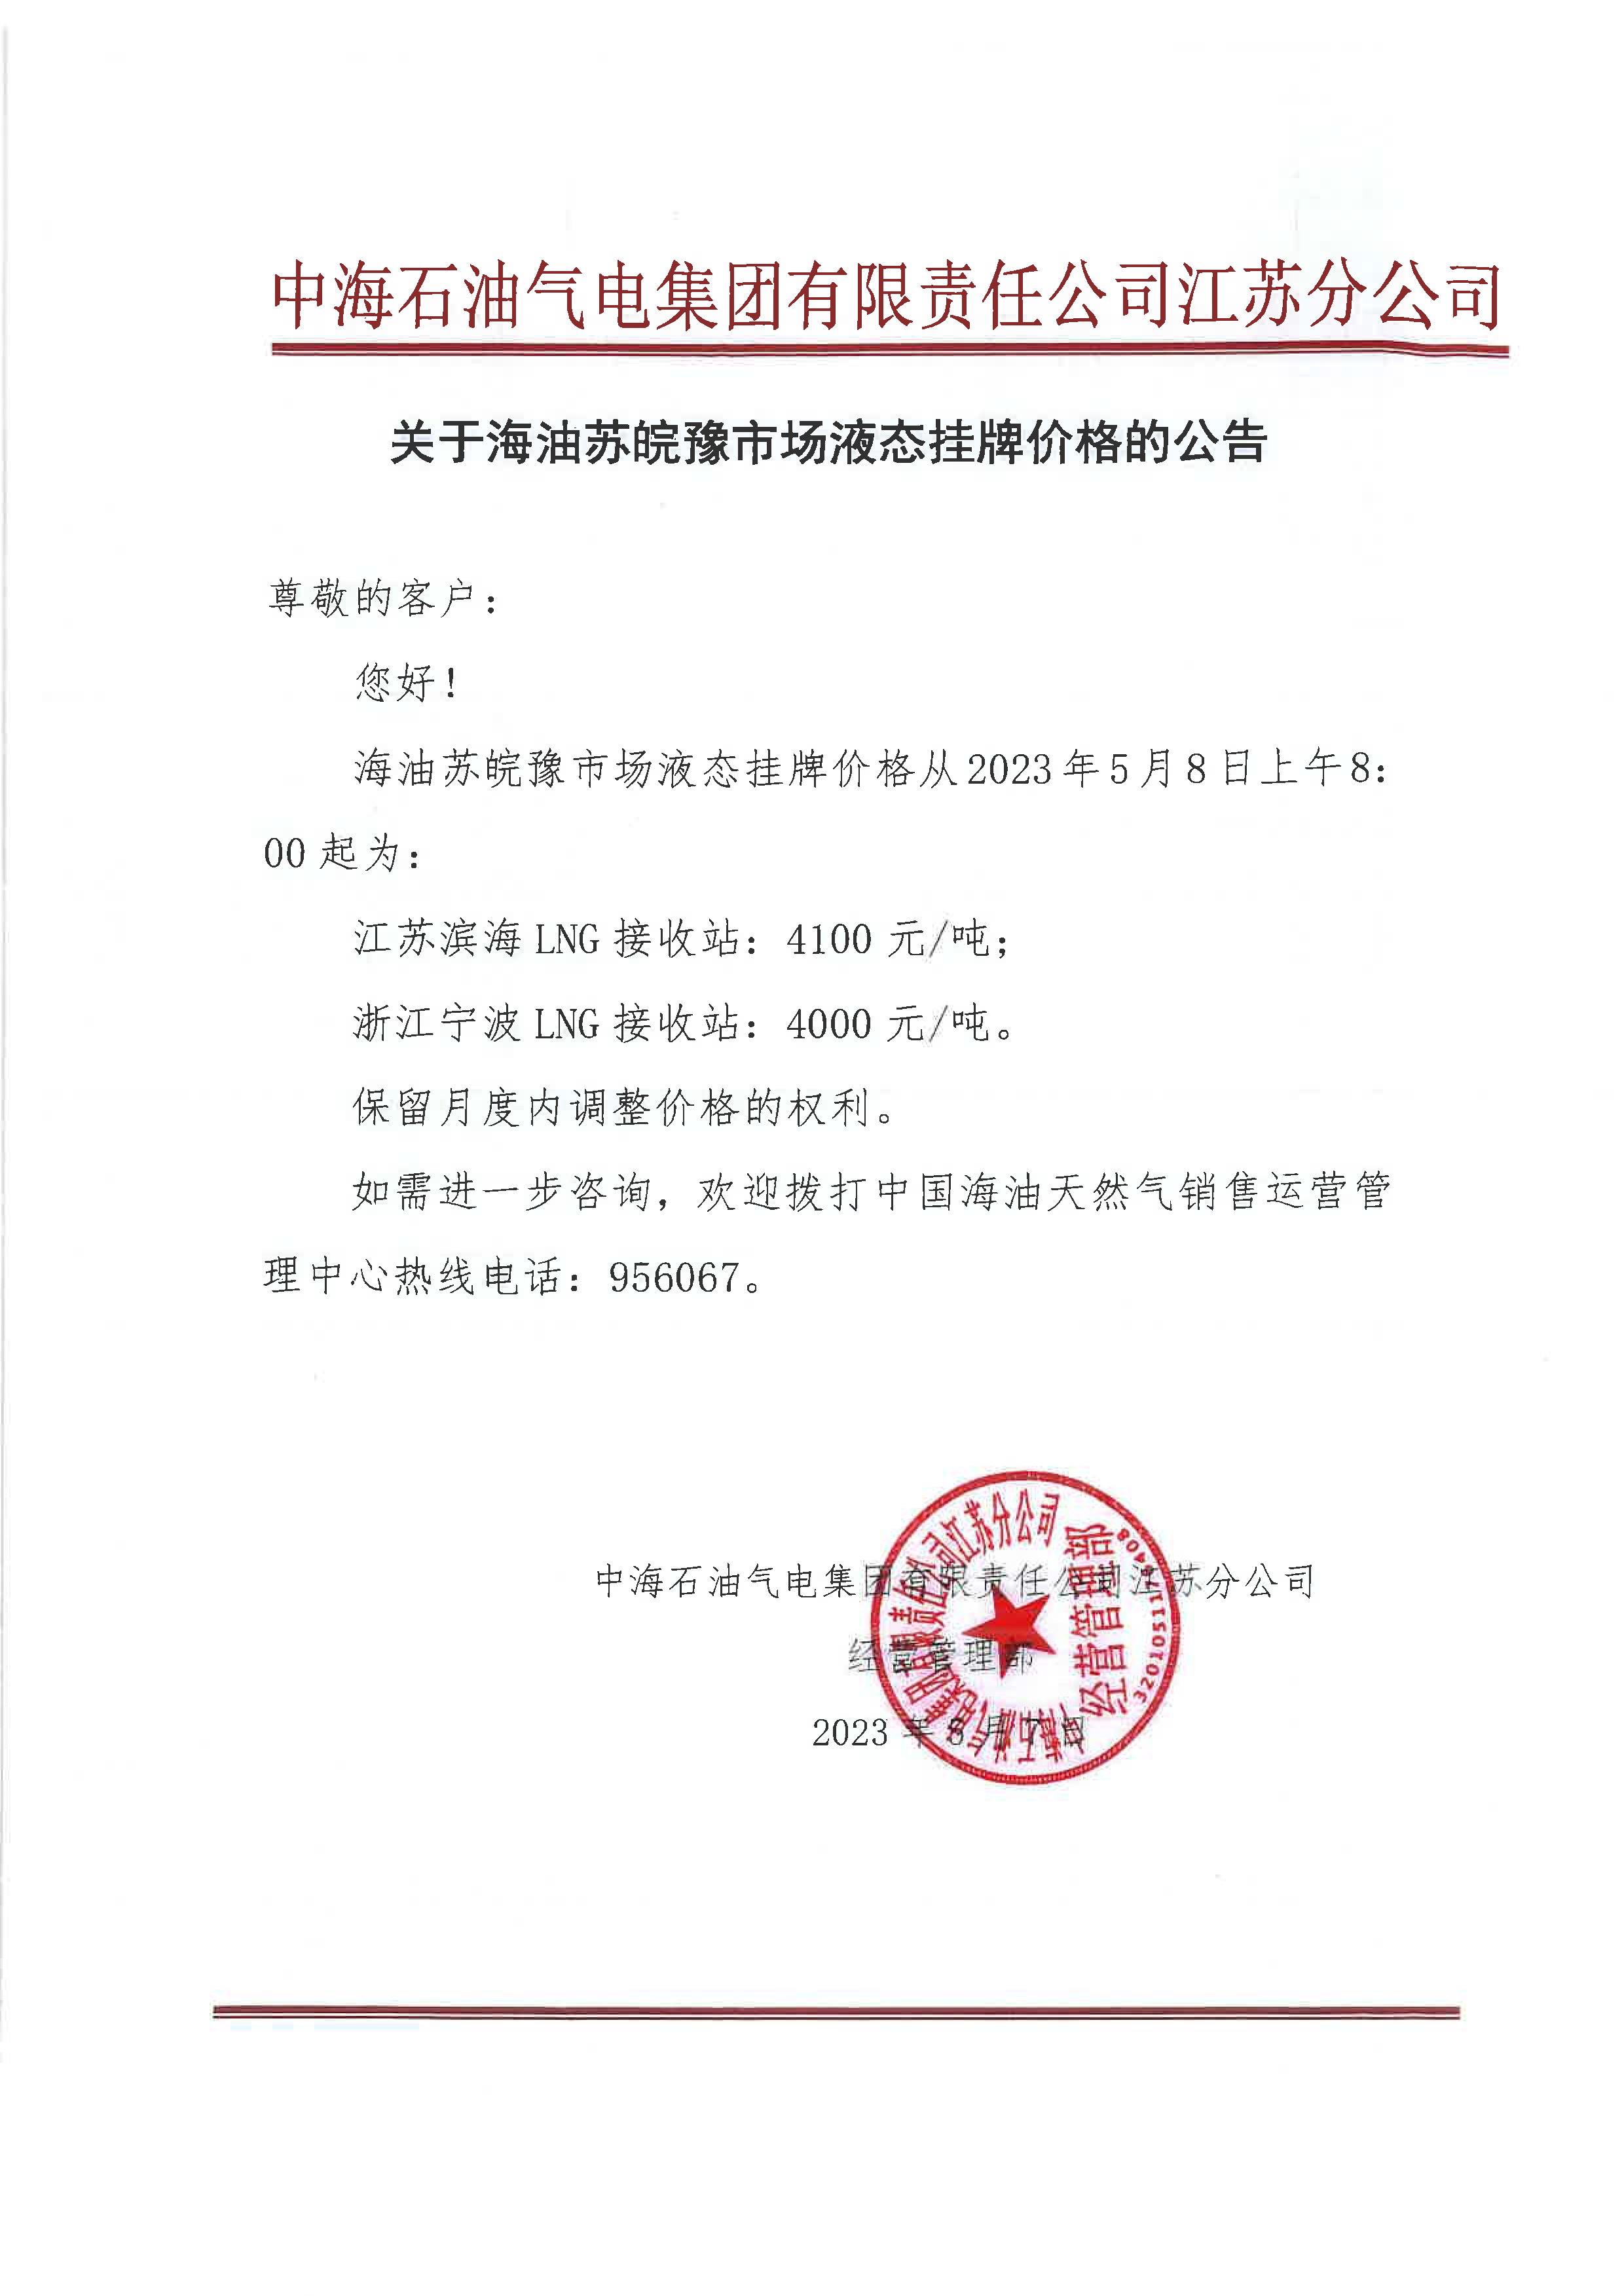 中海油江苏分公司关于5月8日华东苏皖市场价格调整公告.png